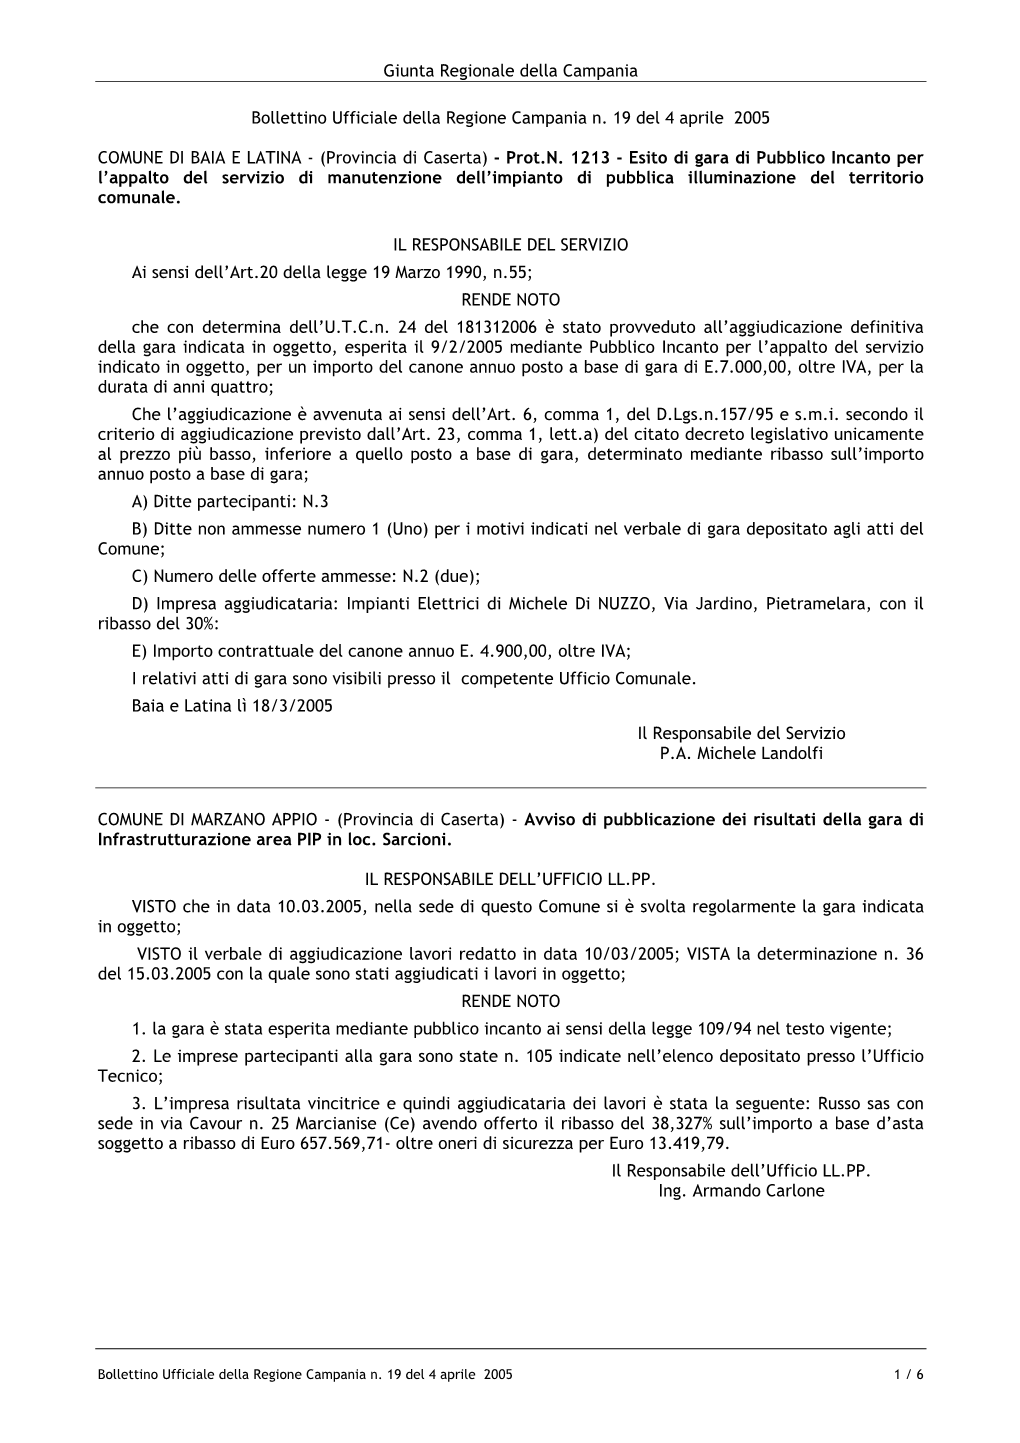 Bollettino Ufficiale Della Regione Campania N. 19 Del 4 Aprile 2005